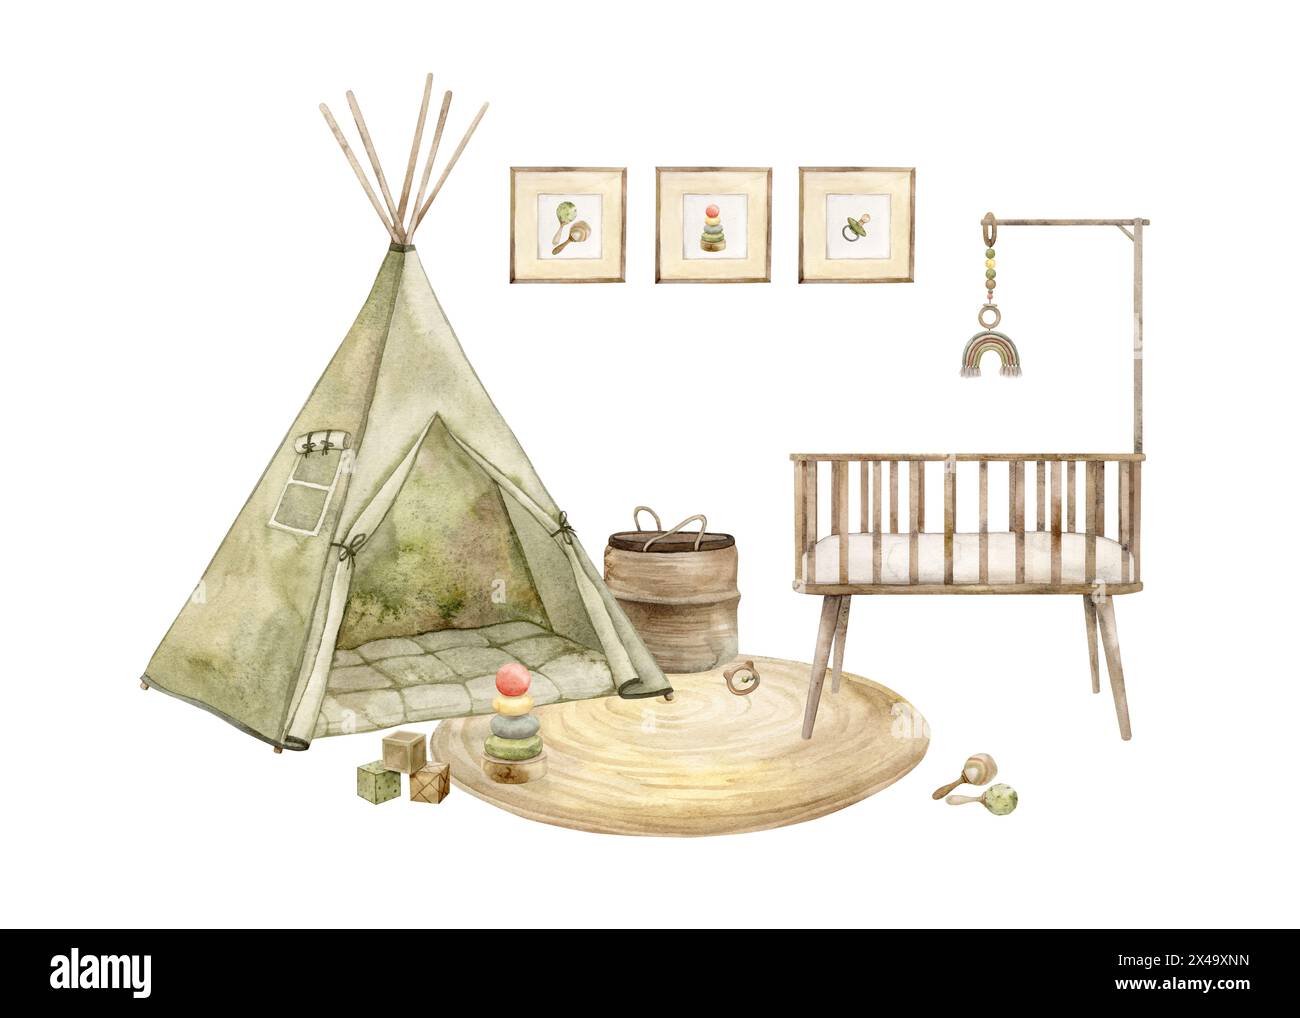 Composizione interna di una stanza per bambini con un wigwam, una culla di legno, un tappeto e vari giocattoli. Illustrazione isolata ad acquerello per interni per bambini Foto Stock